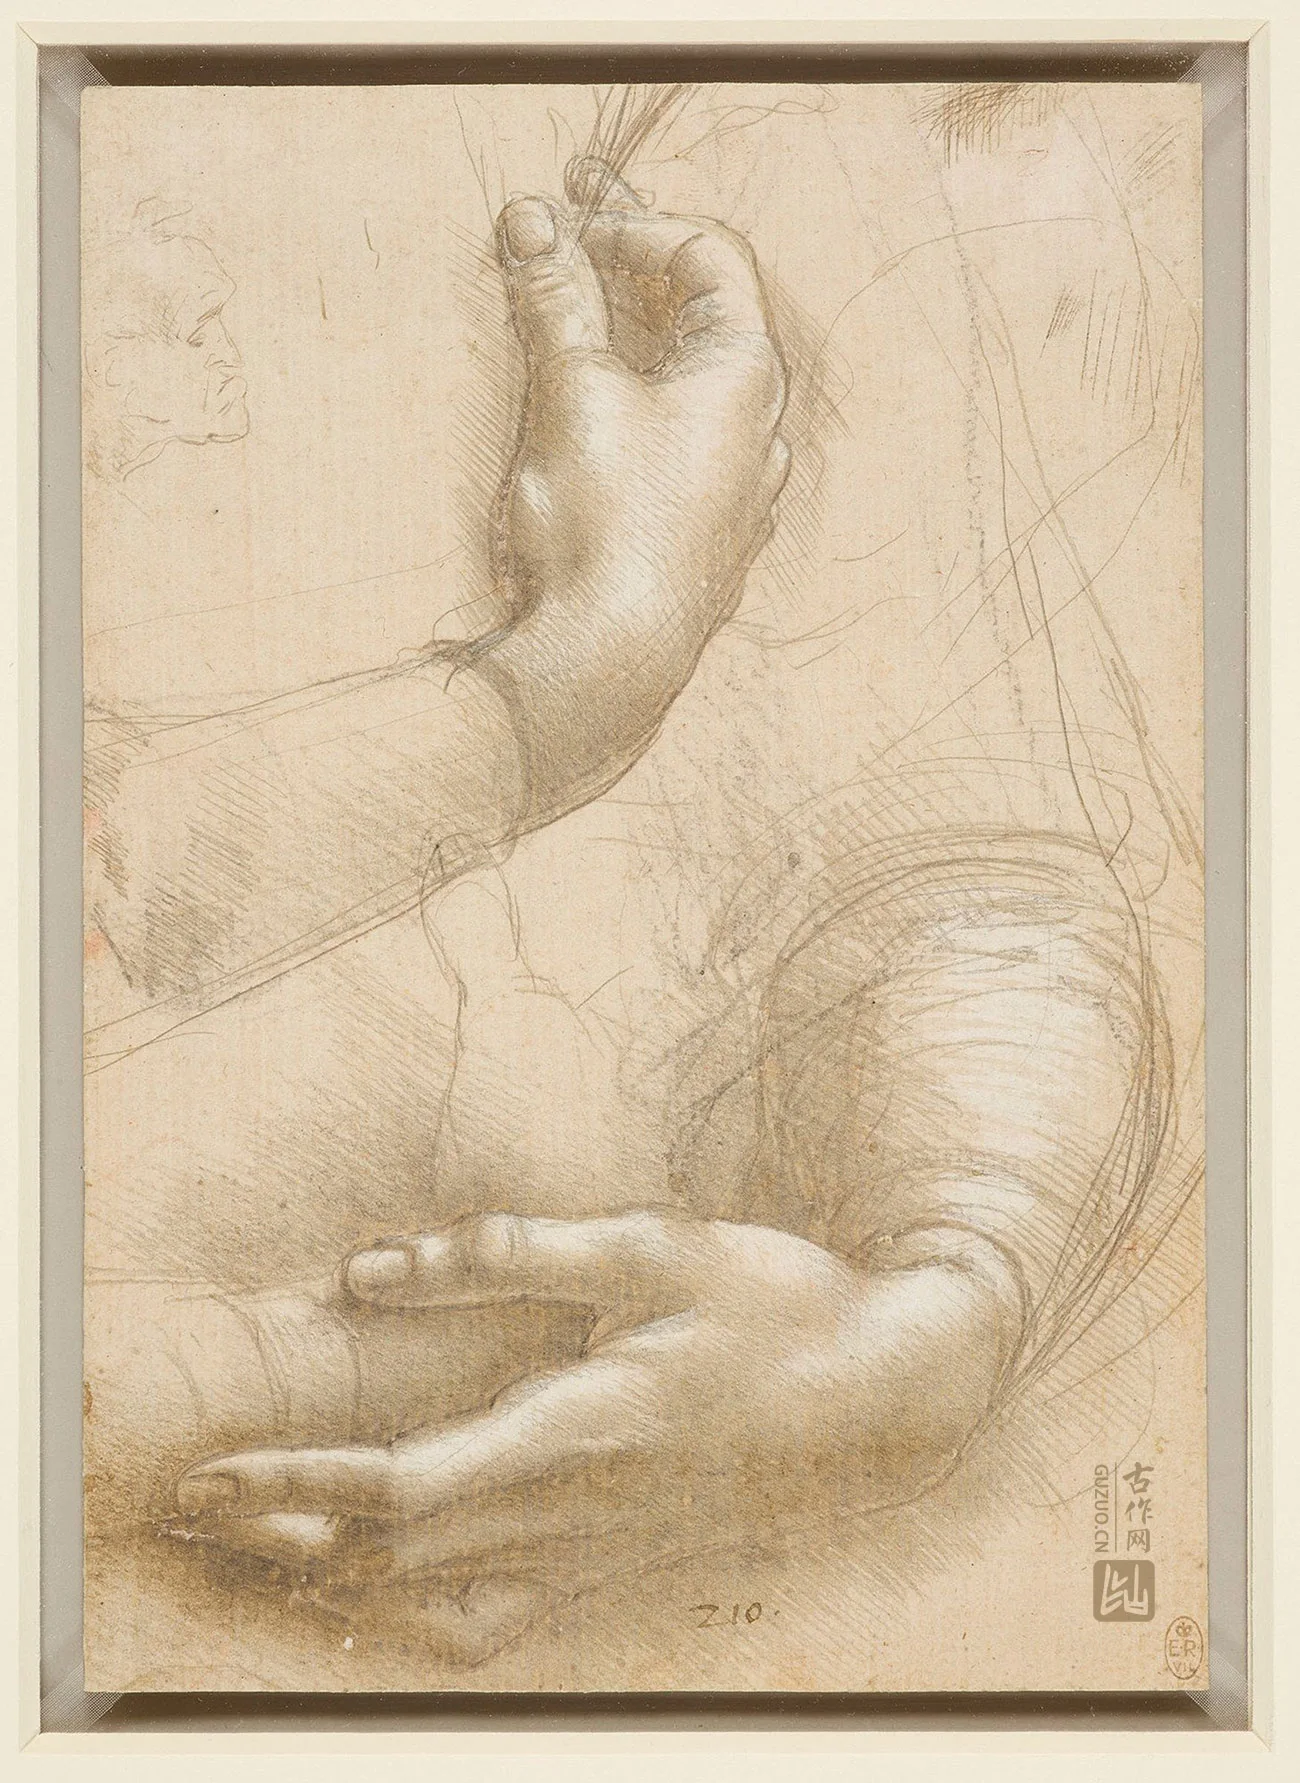 达·芬奇素描《手》高清大图